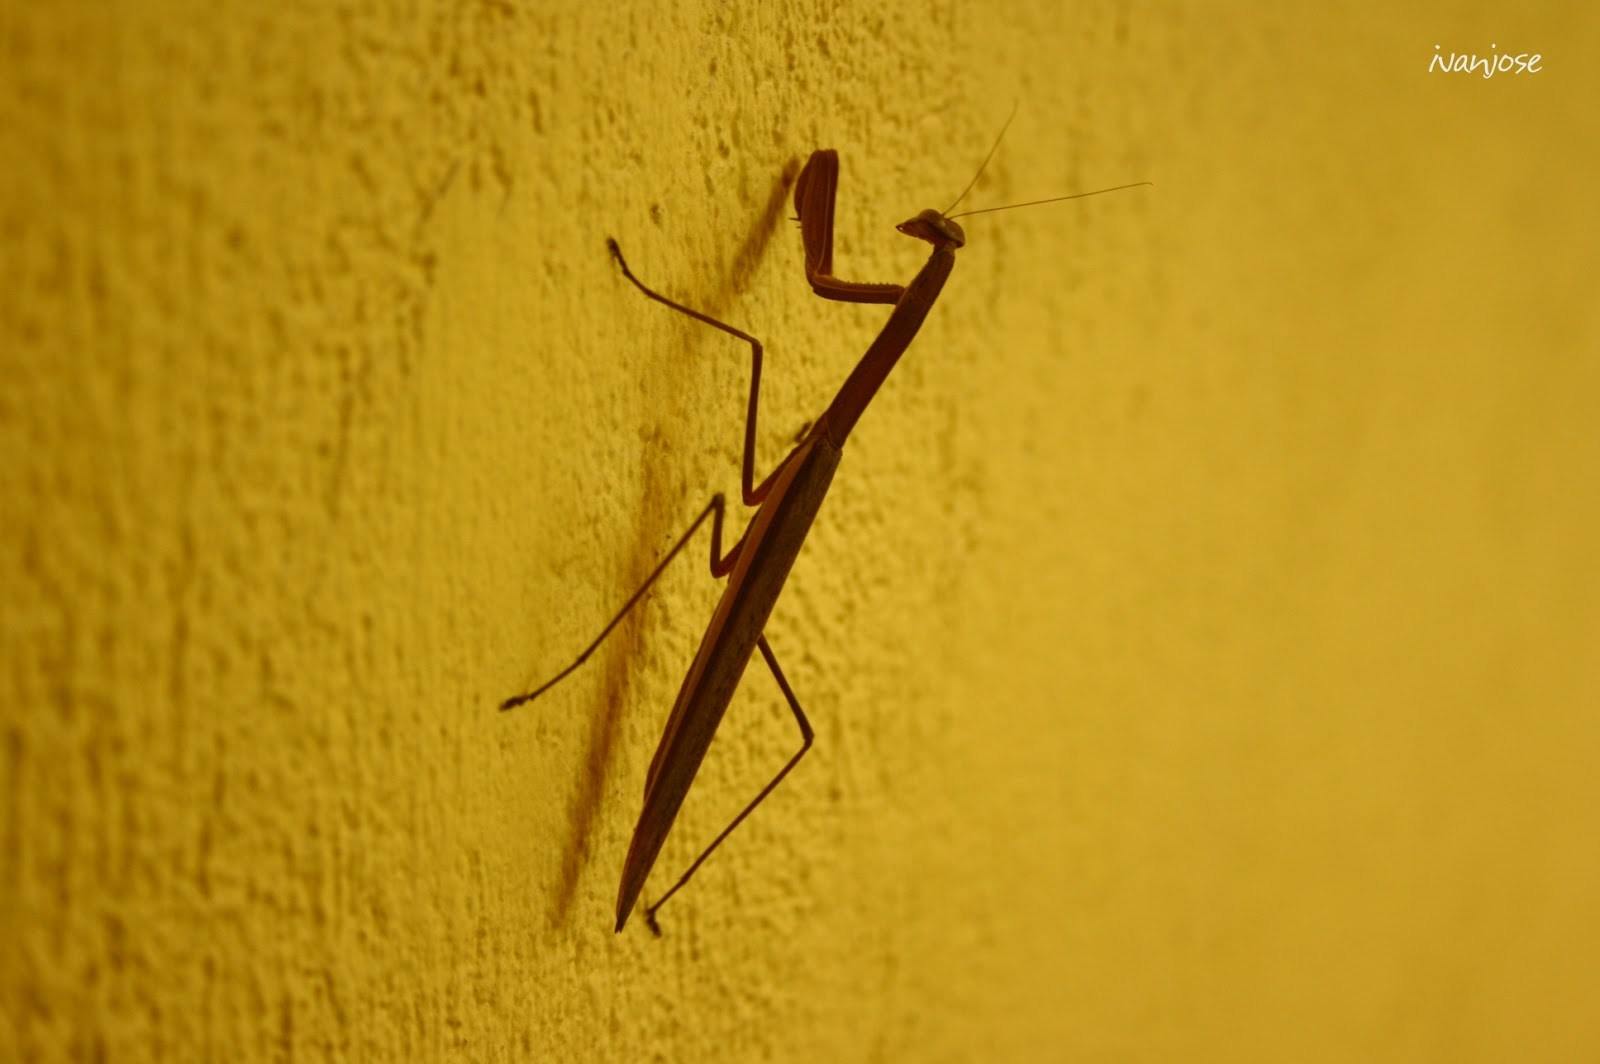 A praying mantis at Sarangani Highlands